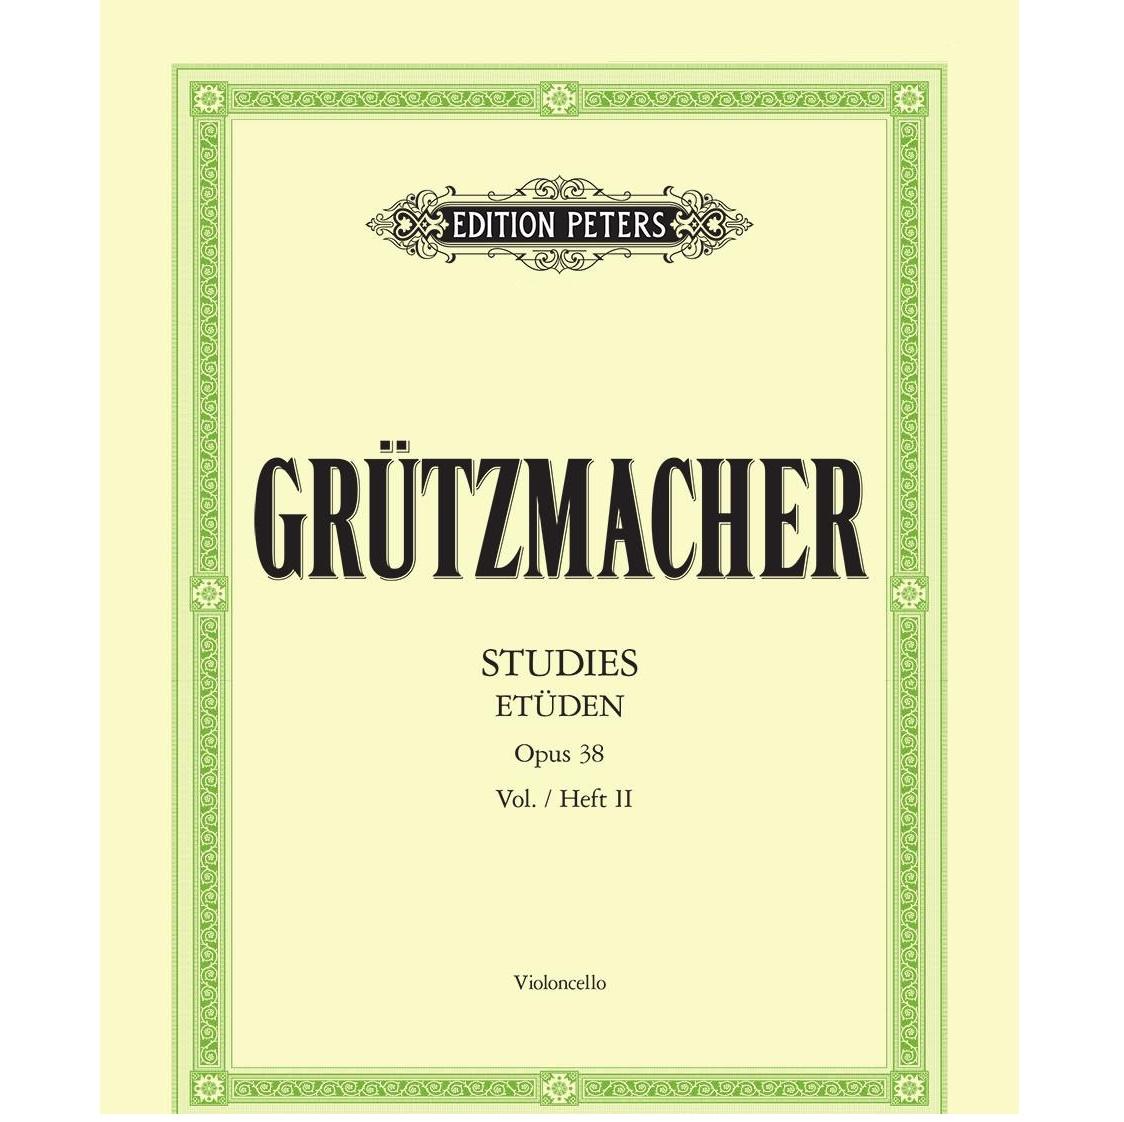 Grutzmacher Etuden Studies Opus 38 vol.II Violoncello - Edition Peters